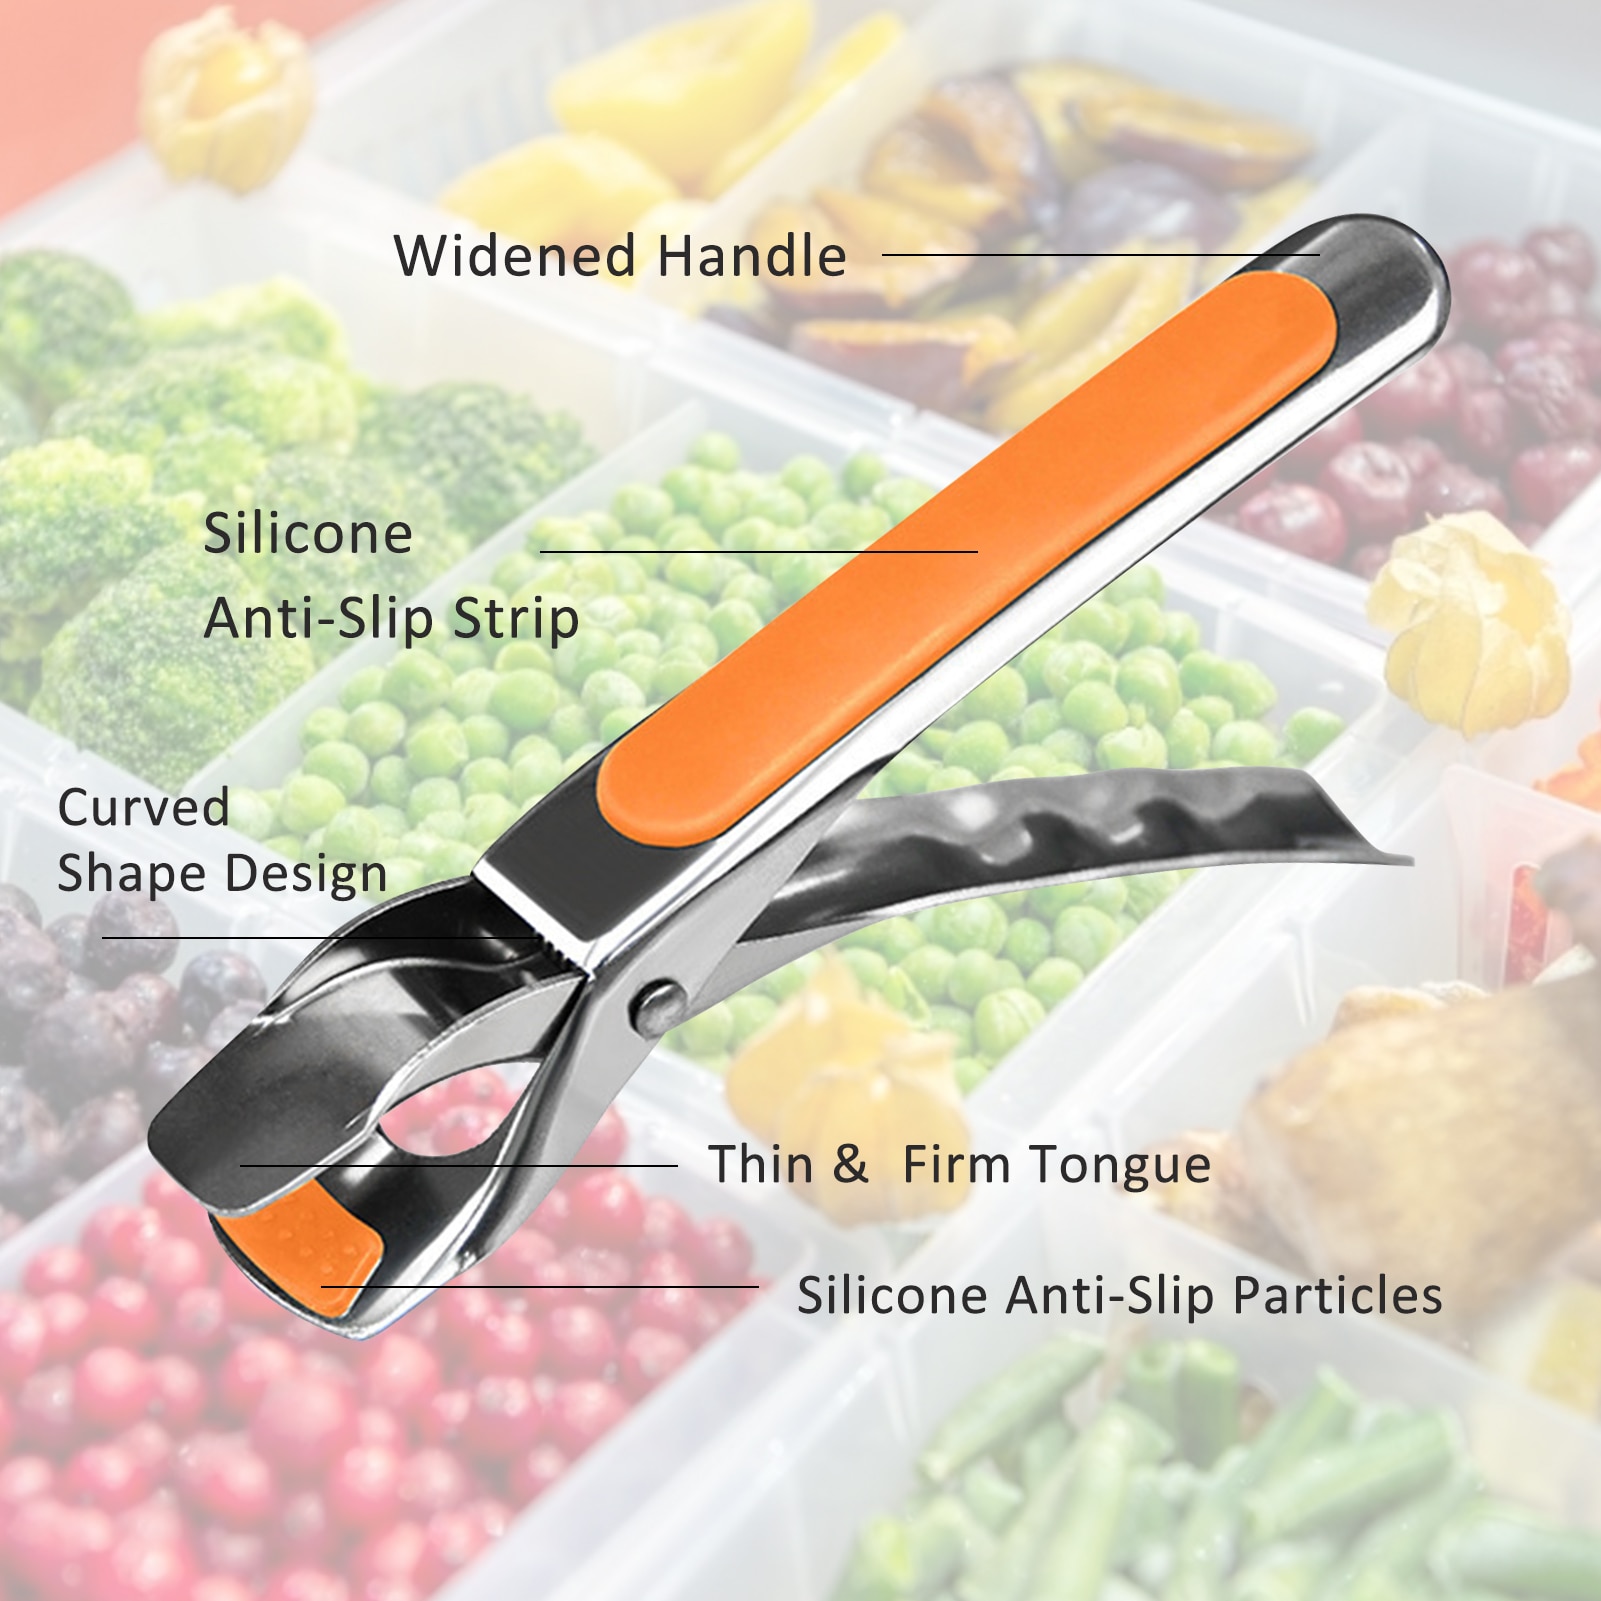 Skridsikker gryde griber klip tallerken skål clip retriever tang silikone håndtag køkken værktøj air friture camping værktøj